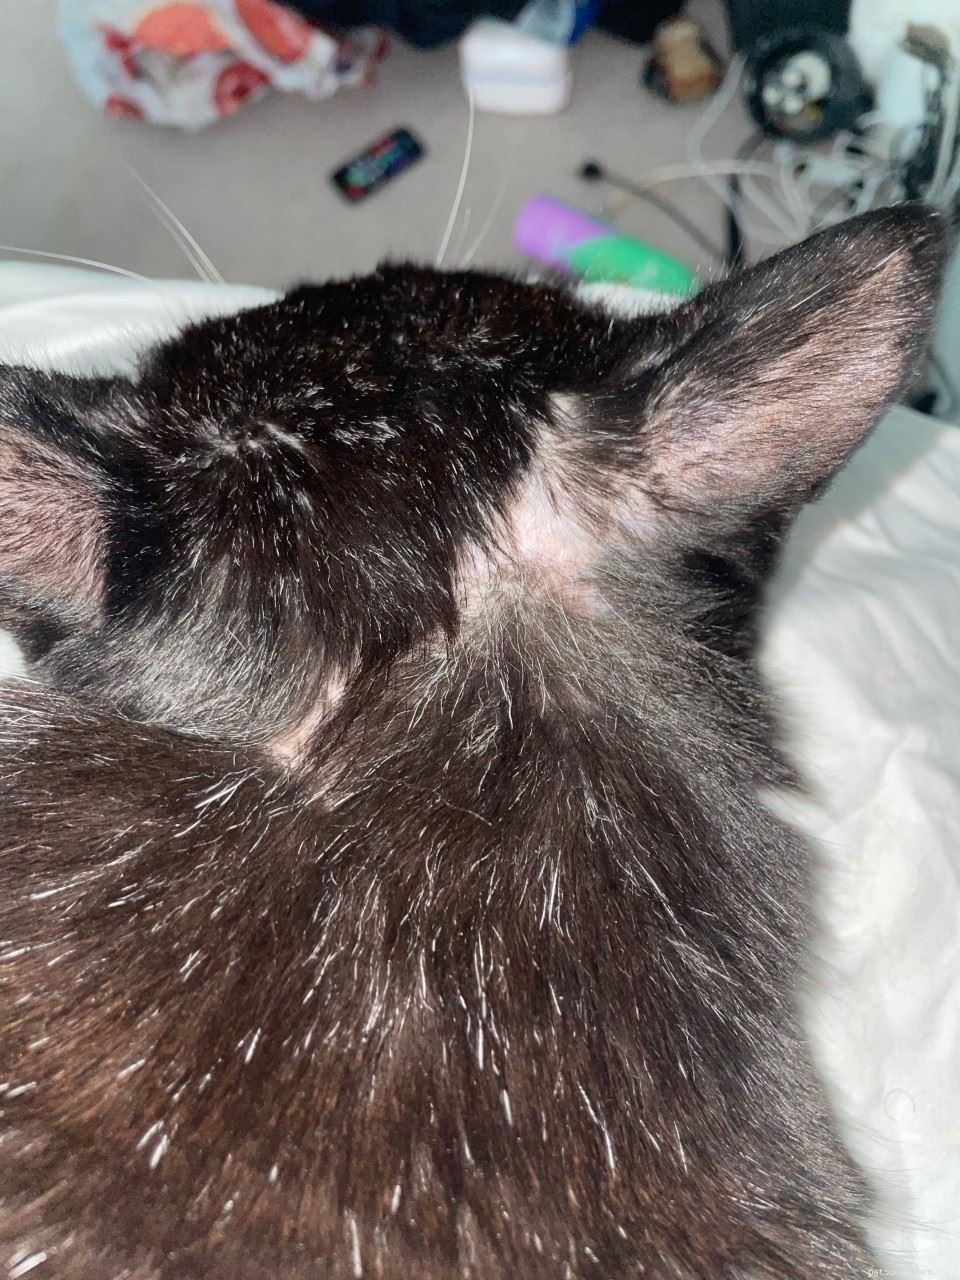 重傷を負った野良猫のチャンキーは、ハローホーミングセンターに到着したとき、自傷行為の歴史がありました。 